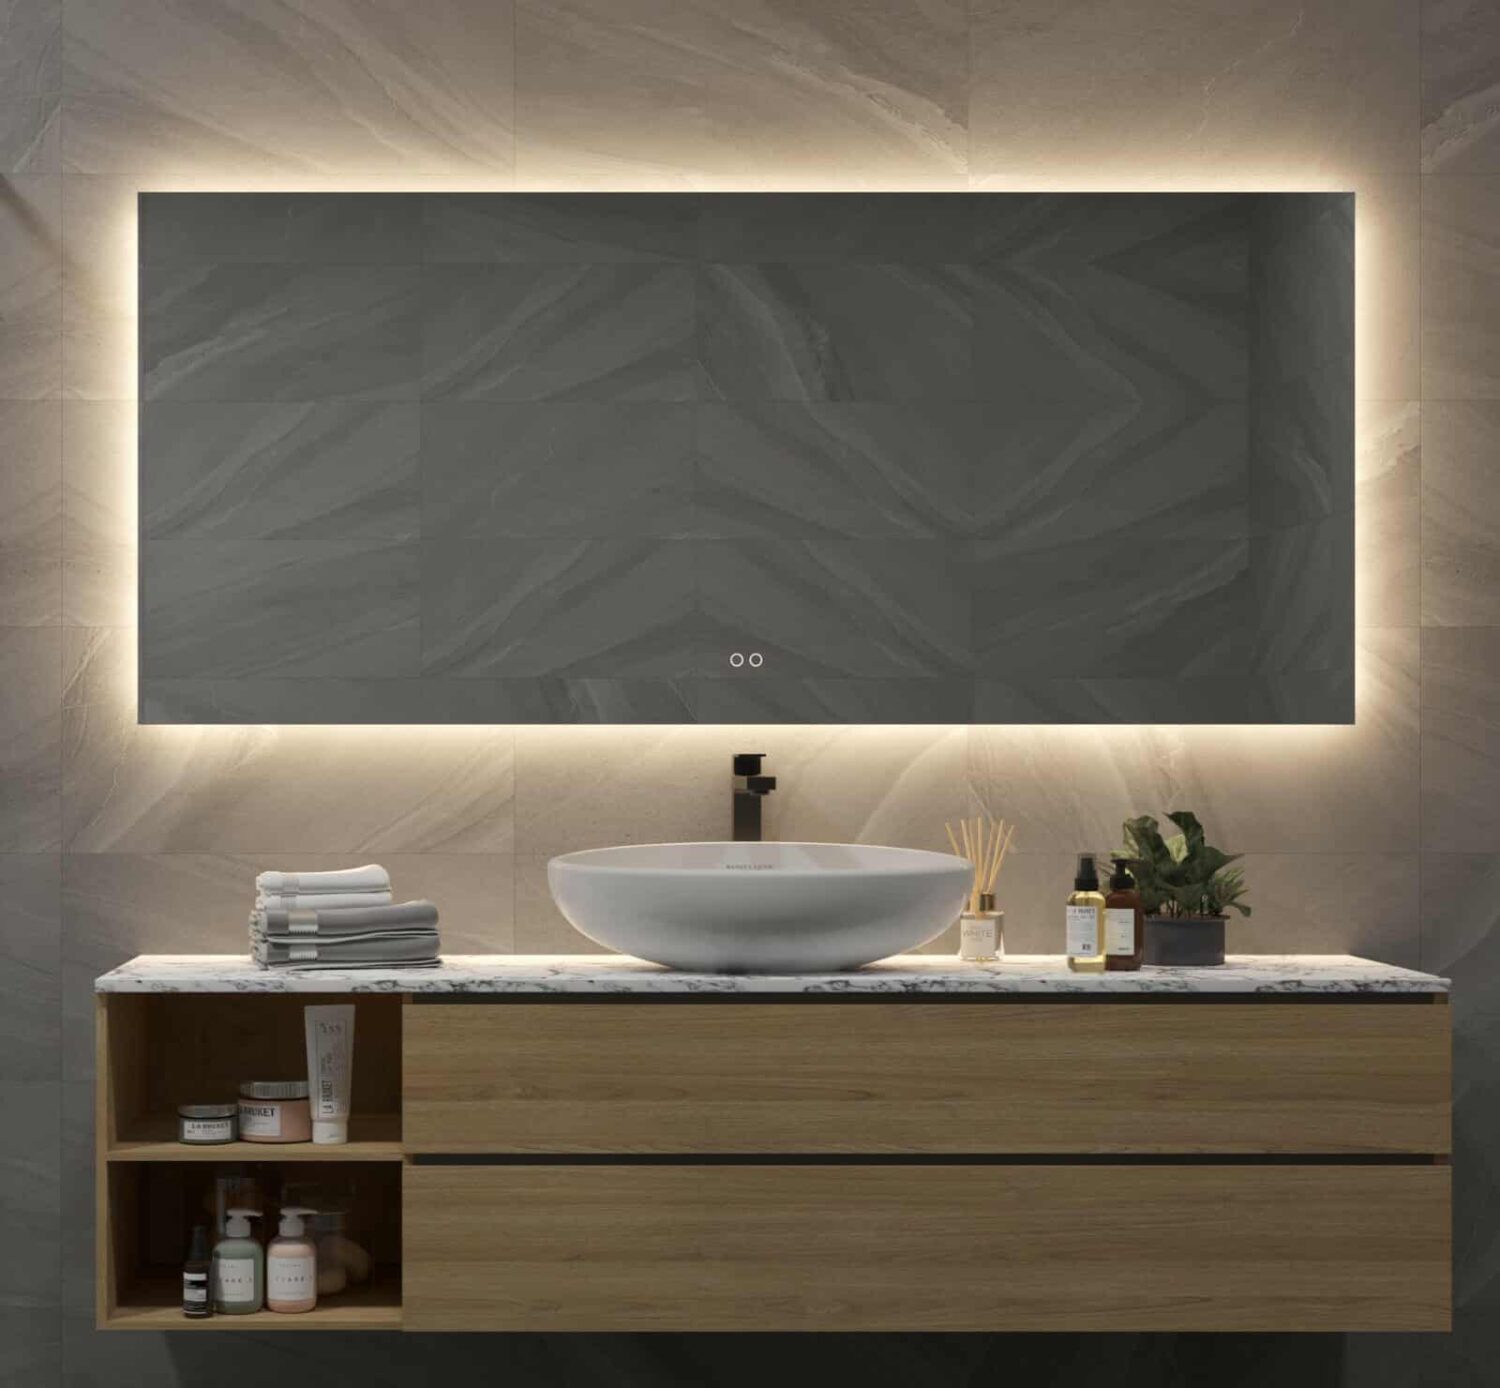 Badkamerspiegel met indirecte verlichting, verwarming, instelbare en dimfunctie 160x70 cm - Designspiegels